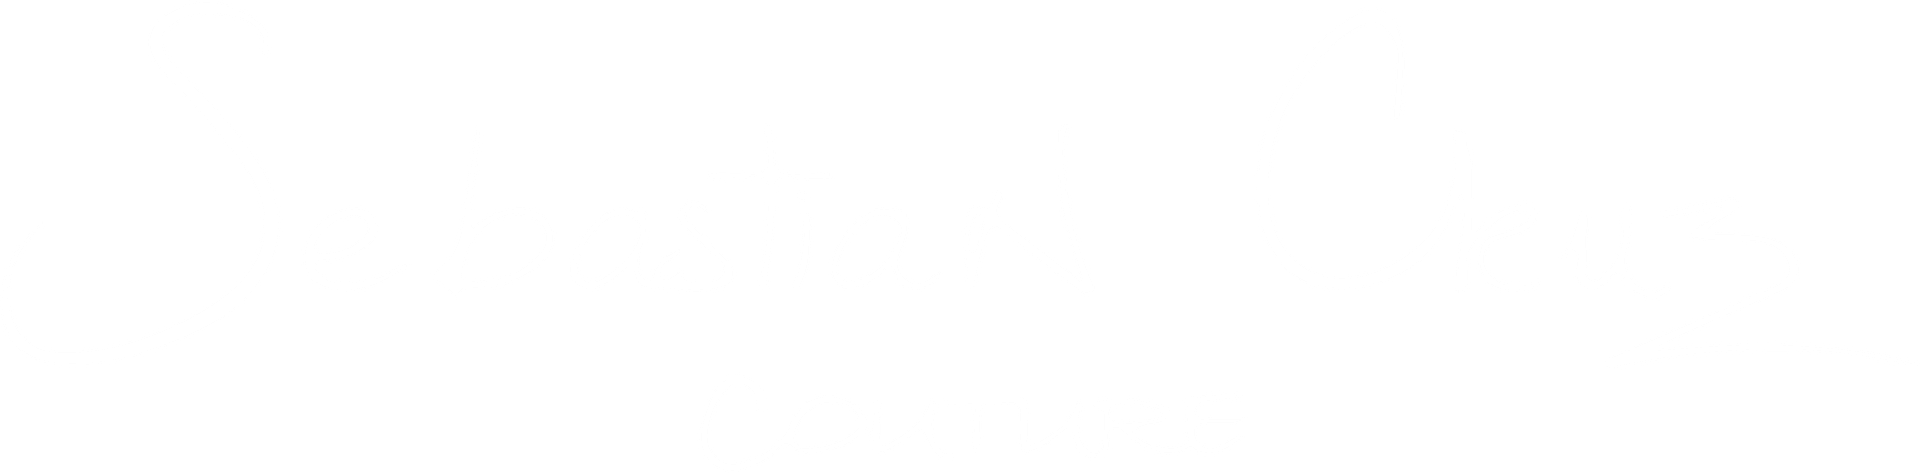 Sebastian Cruz Couture